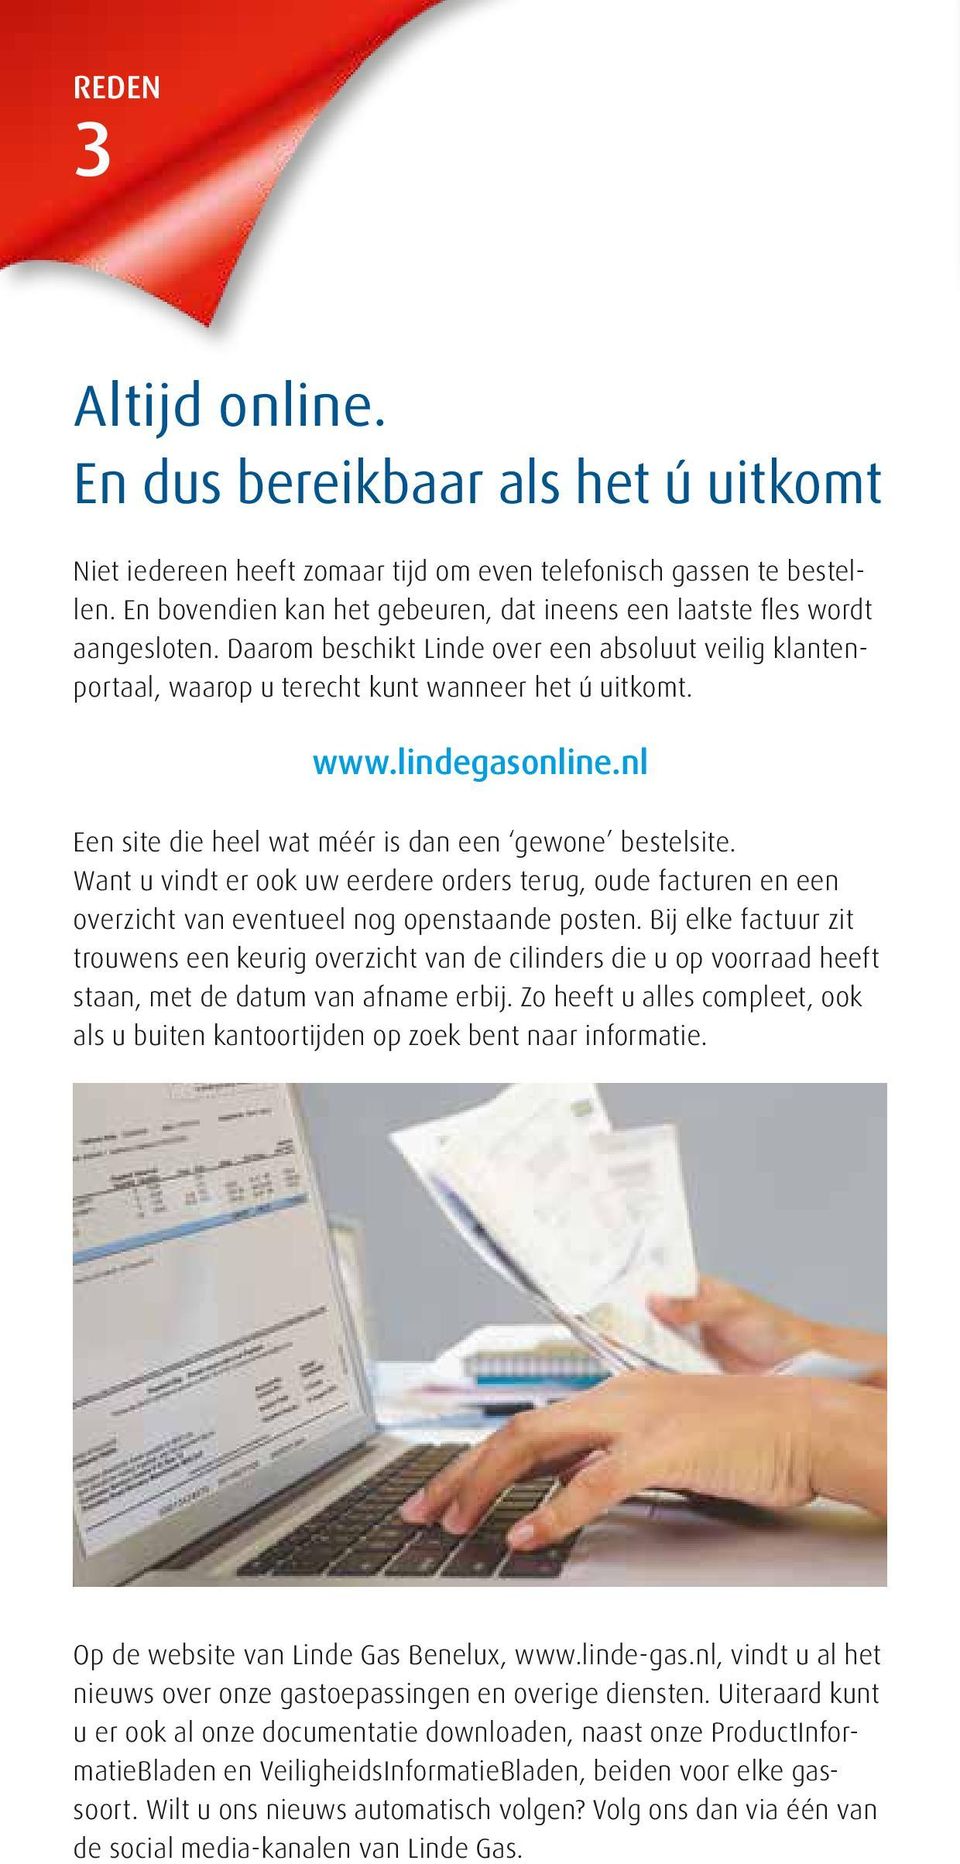 lindegasonline.nl Een site die heel wat méér is dan een gewone bestelsite. Want u vindt er ook uw eerdere orders terug, oude facturen en een overzicht van eventueel nog openstaande posten.